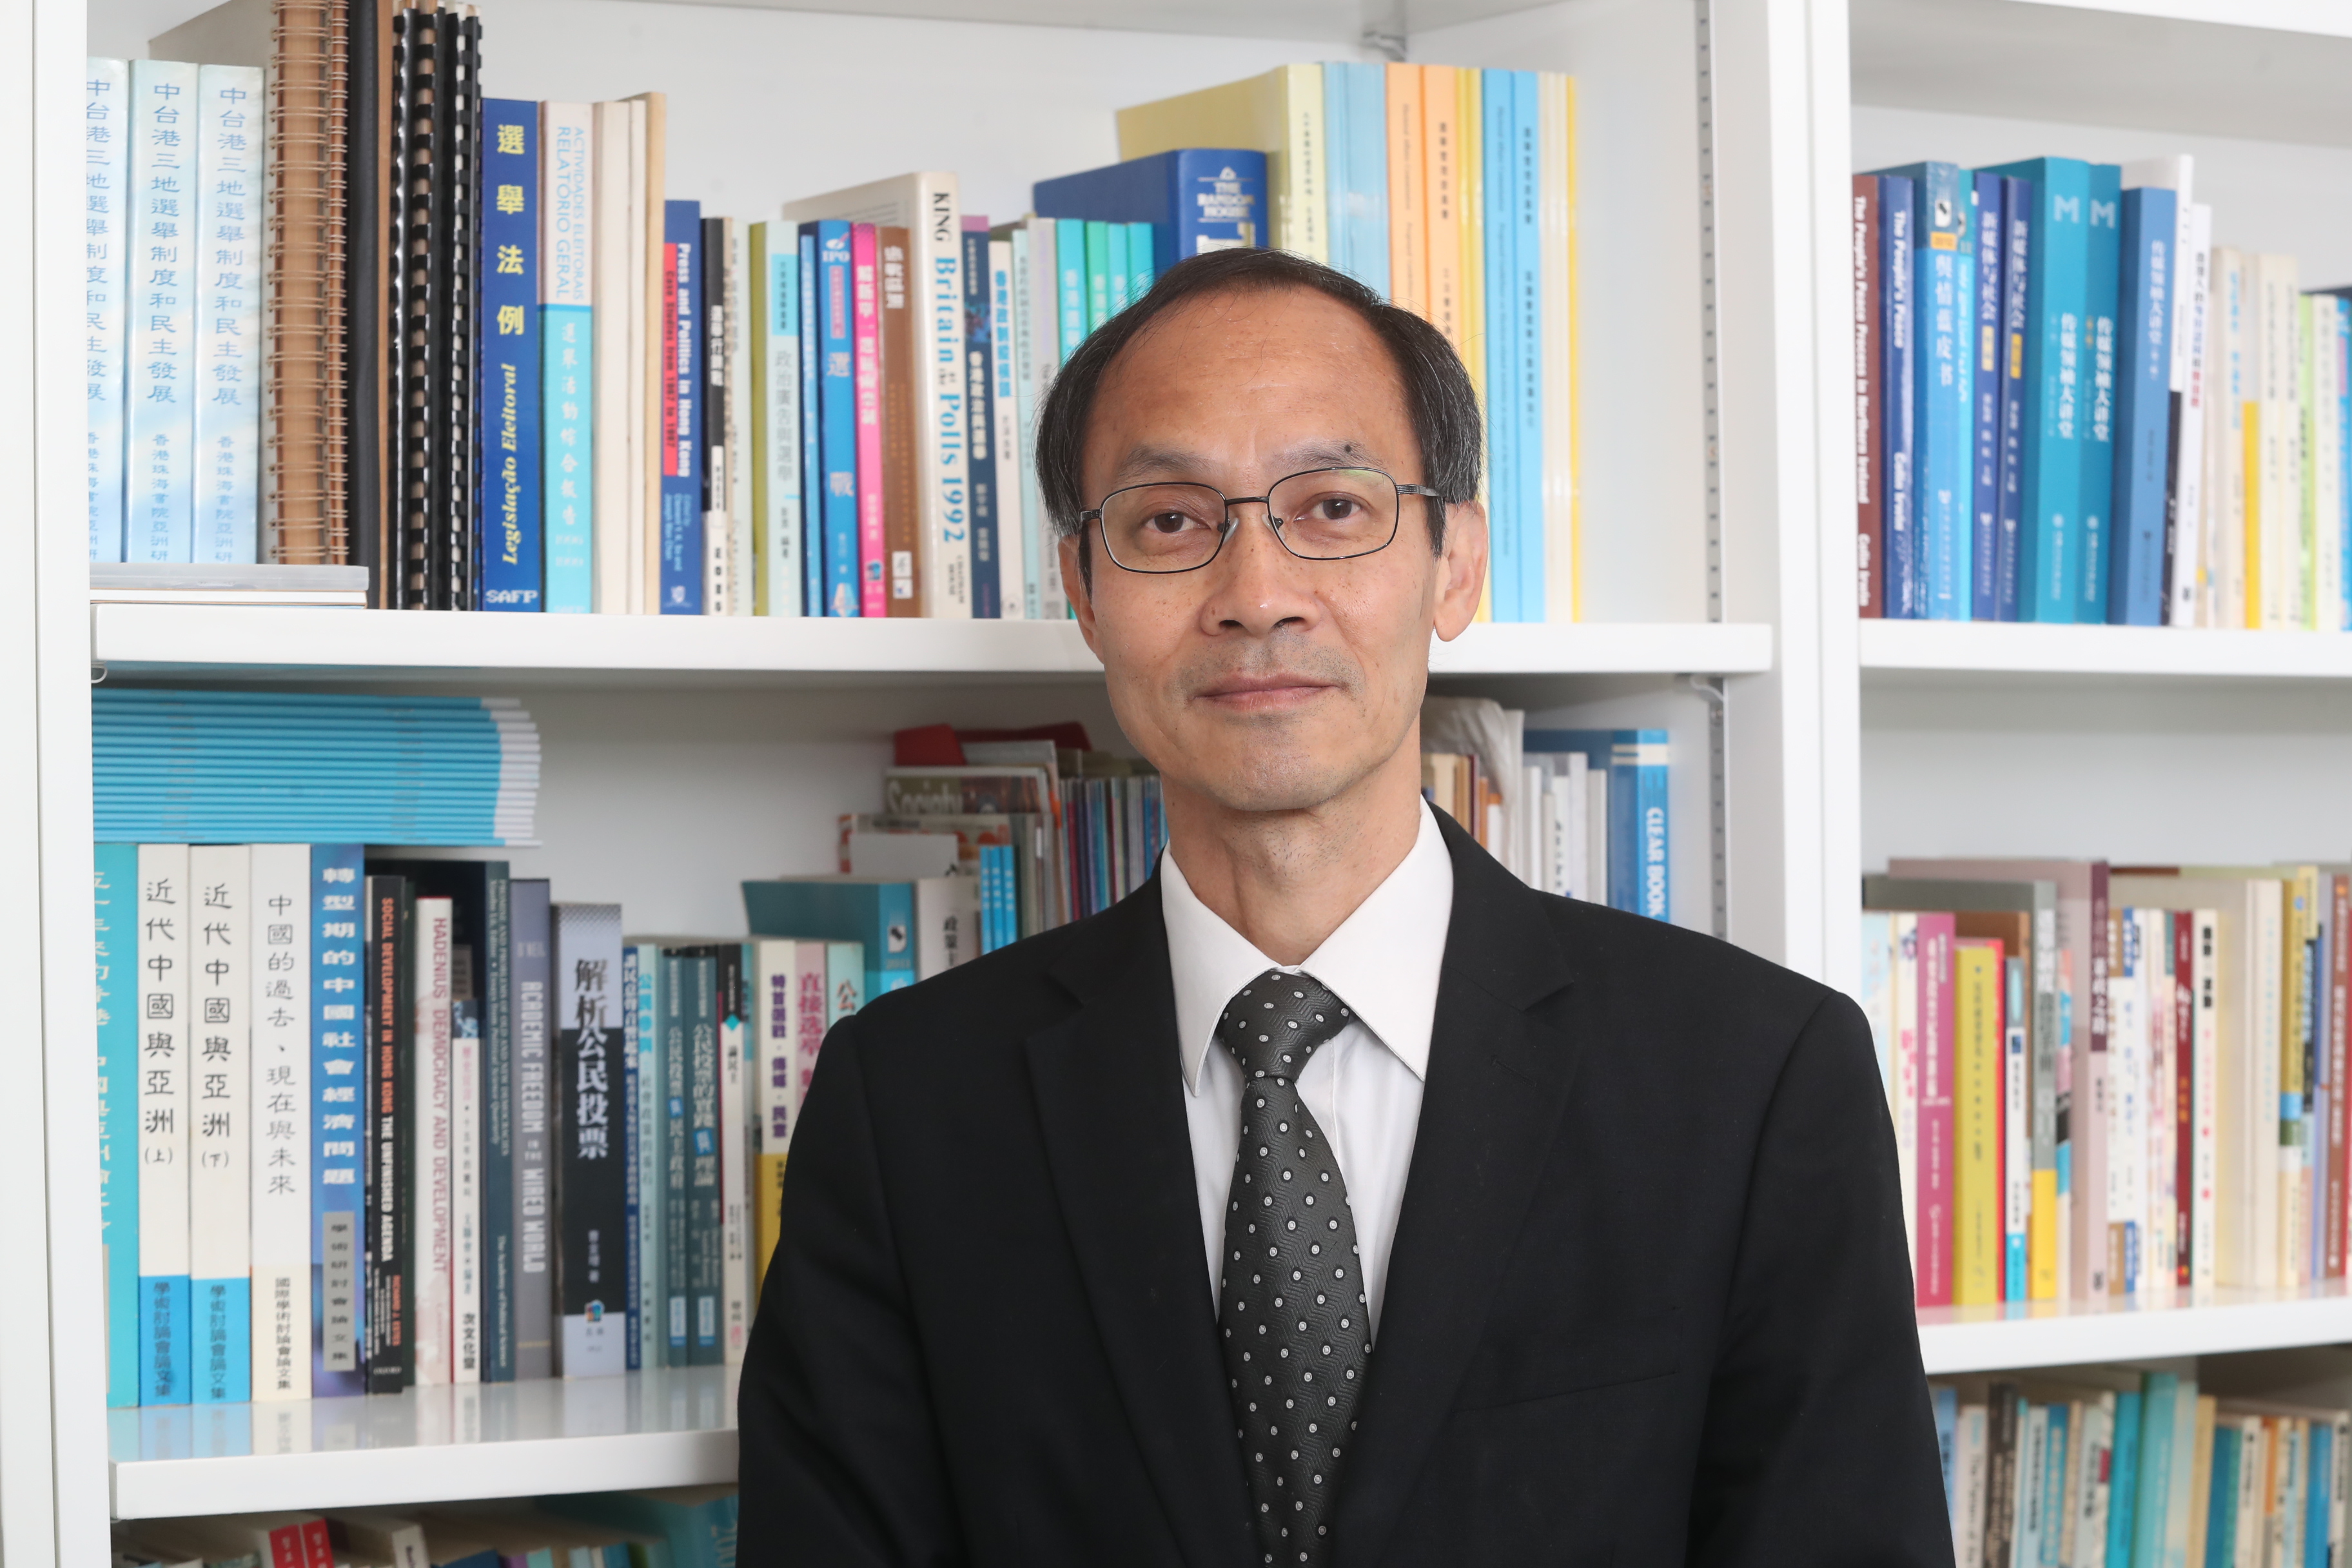 Dr Robert Chung